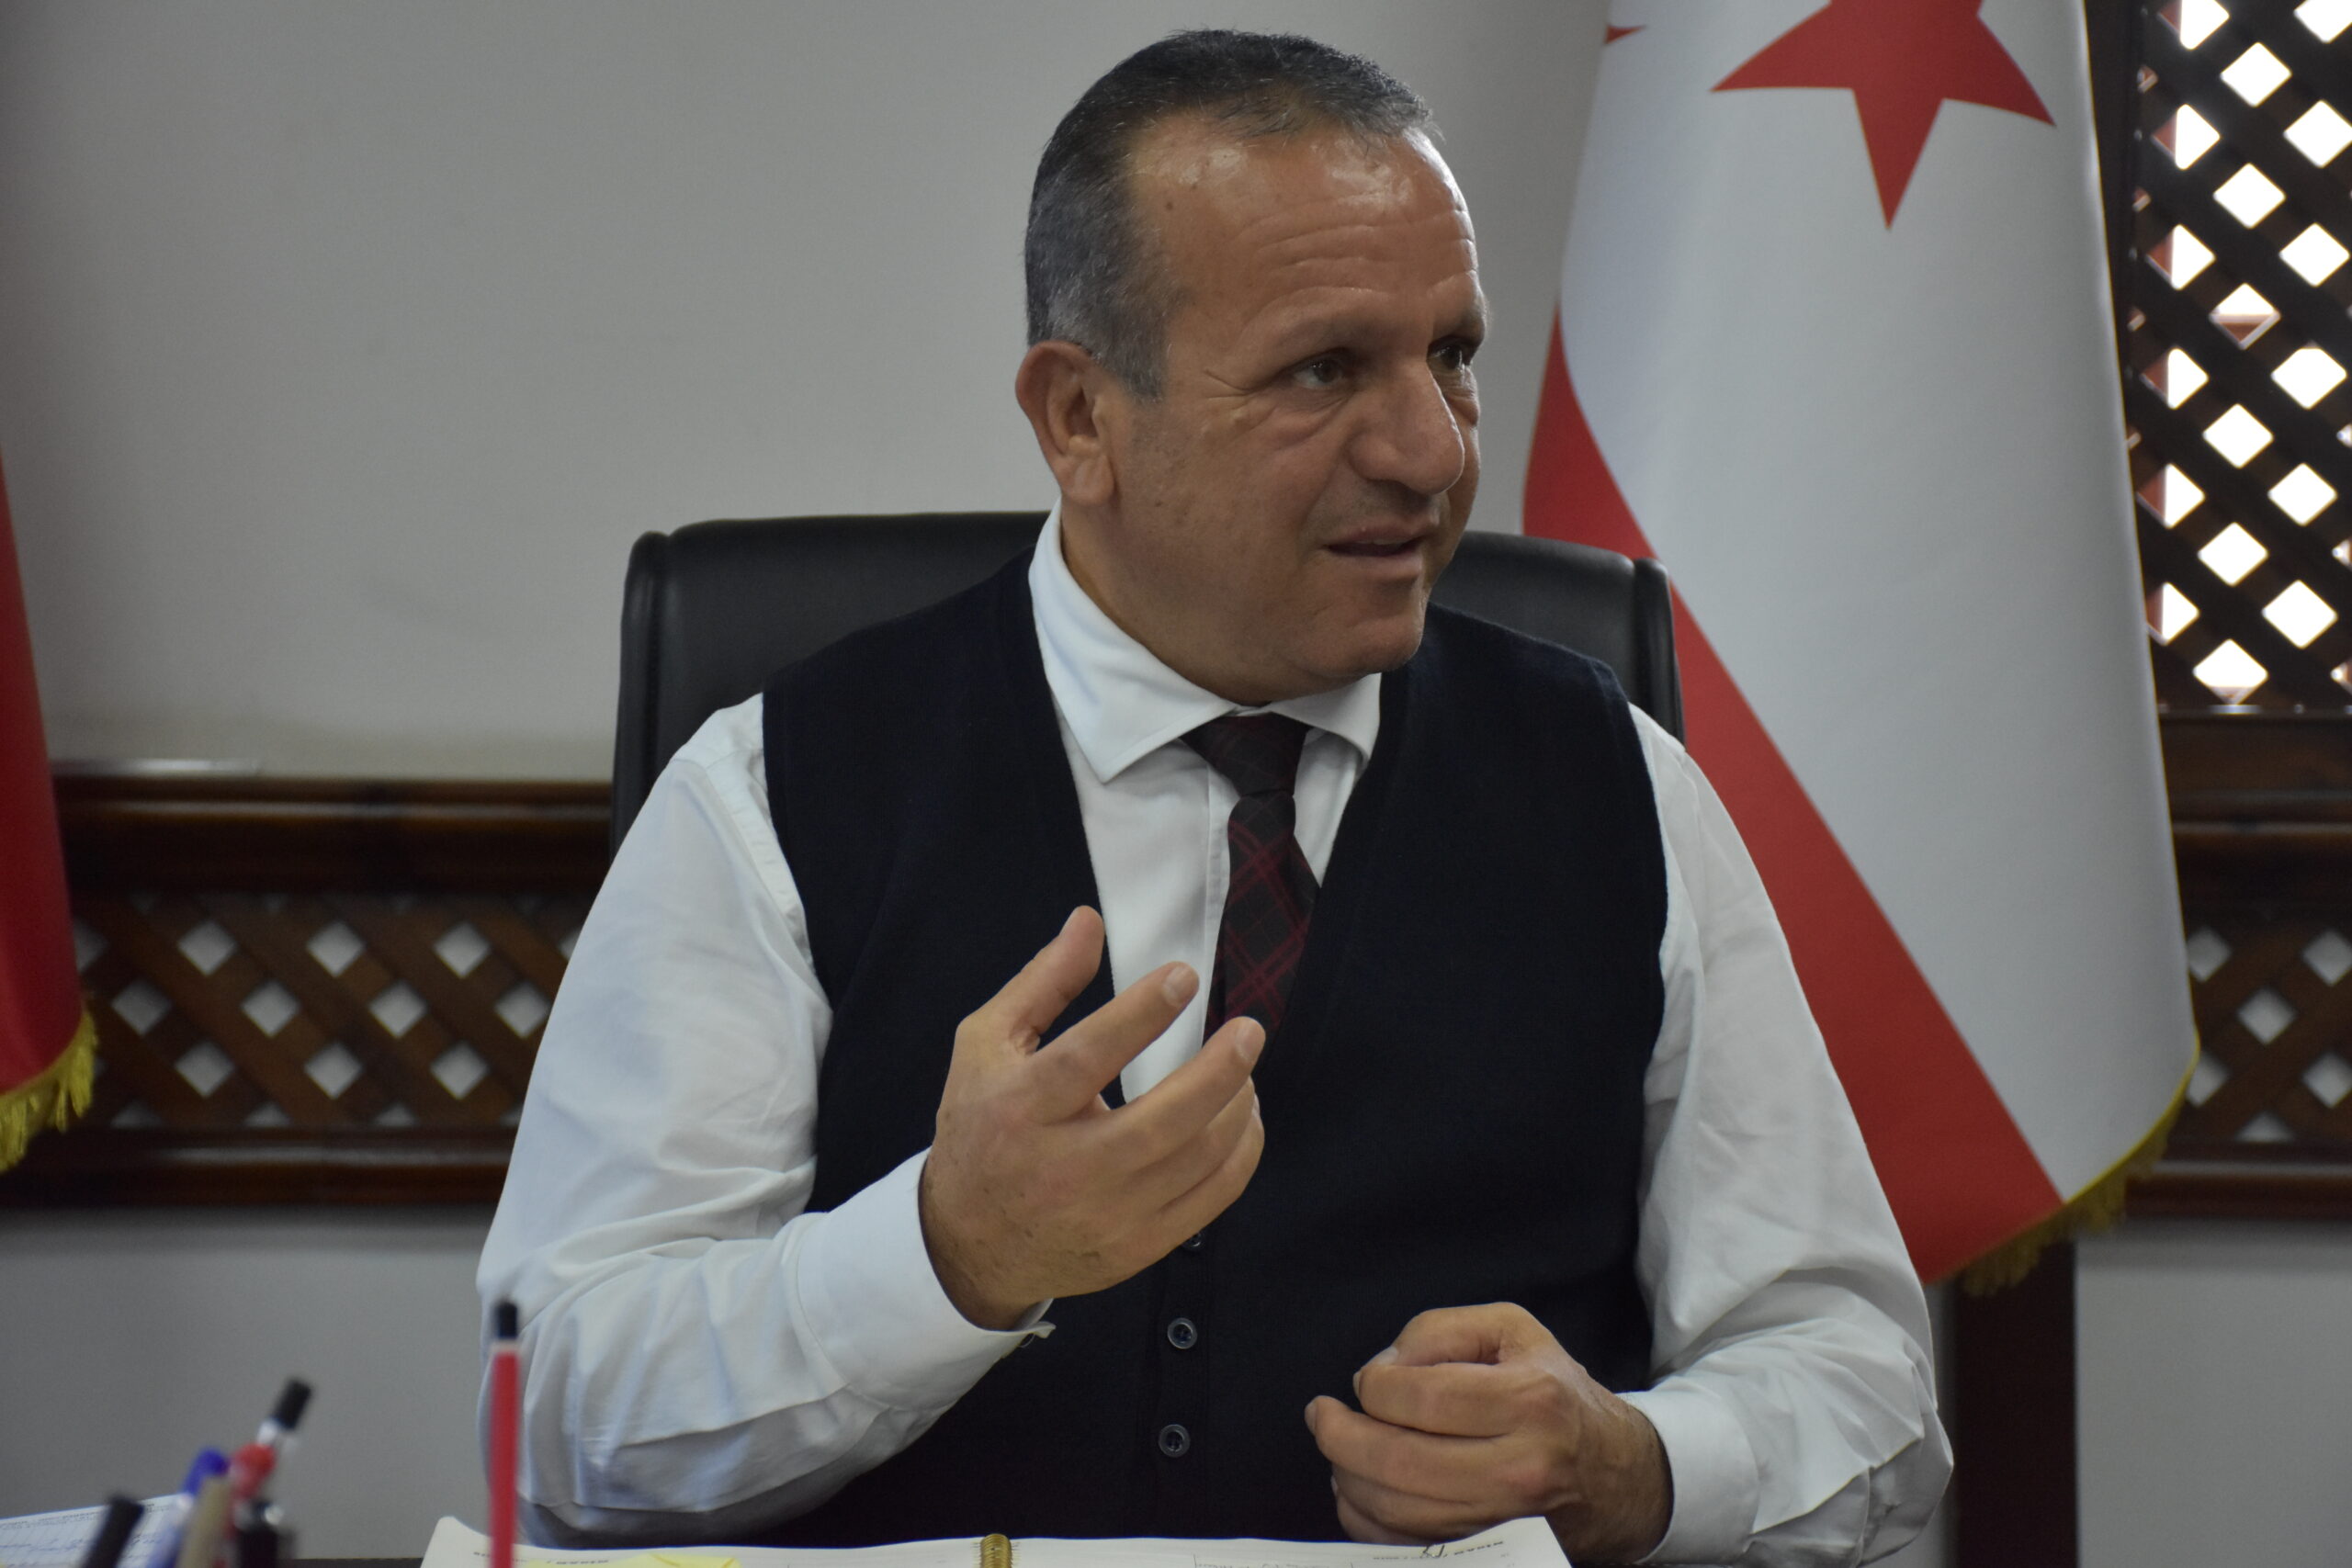 Turizm ve Çevre Bakanı Fikri Ataoğlu, kapalı turizm ile adaya gelen yolcularla ilgili olarak açıklamalarda bulundu